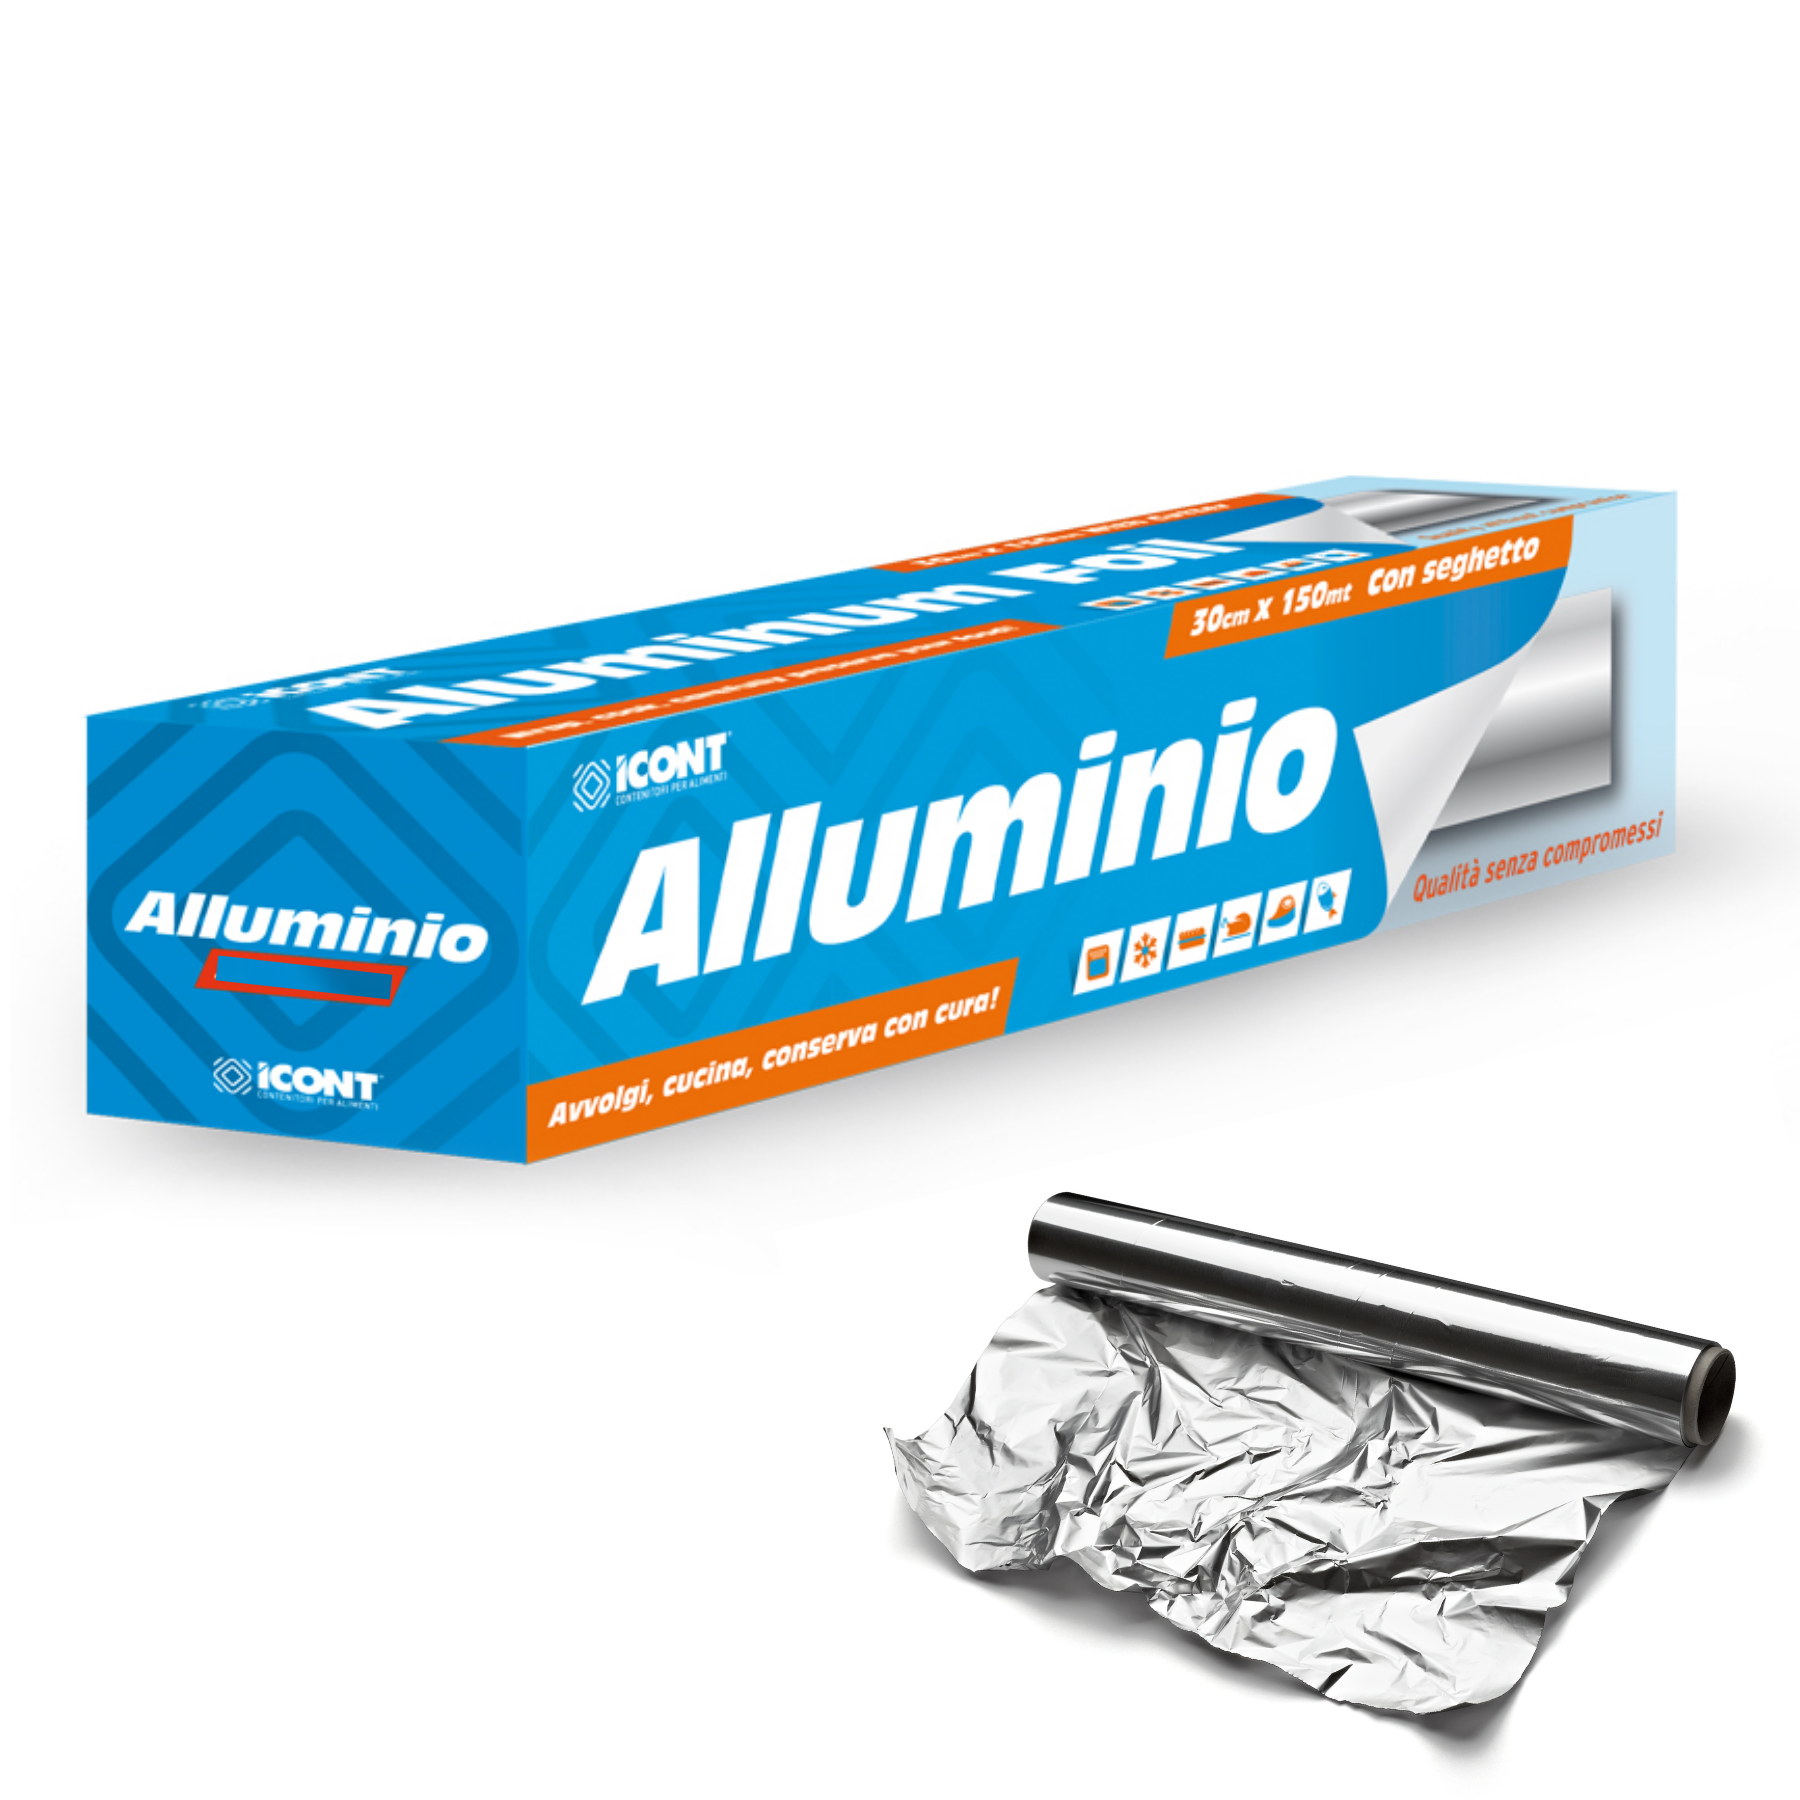 Lamina di alluminio / un rotolo di carta stagnola - spesso